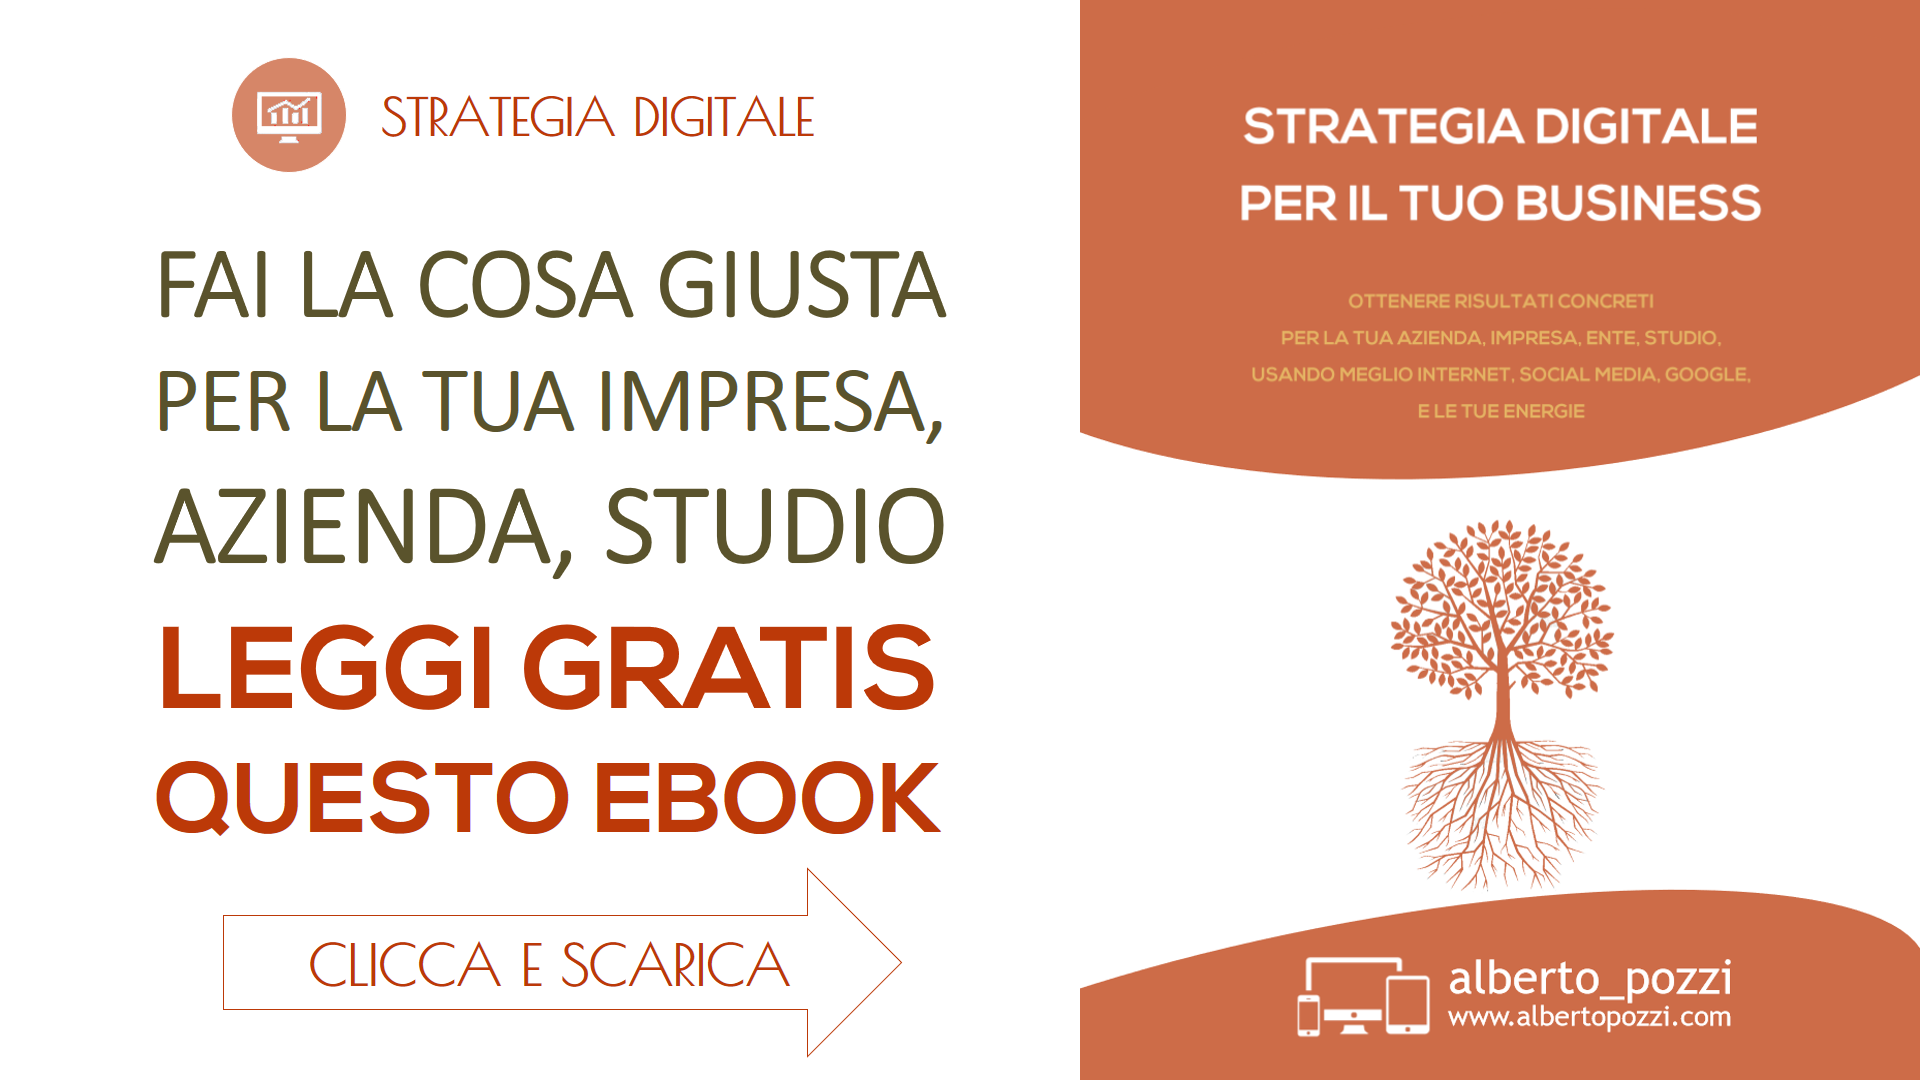 Scarica "Strategia Digitale per il tuo Business" - Alberto Pozzi , ebook gratis